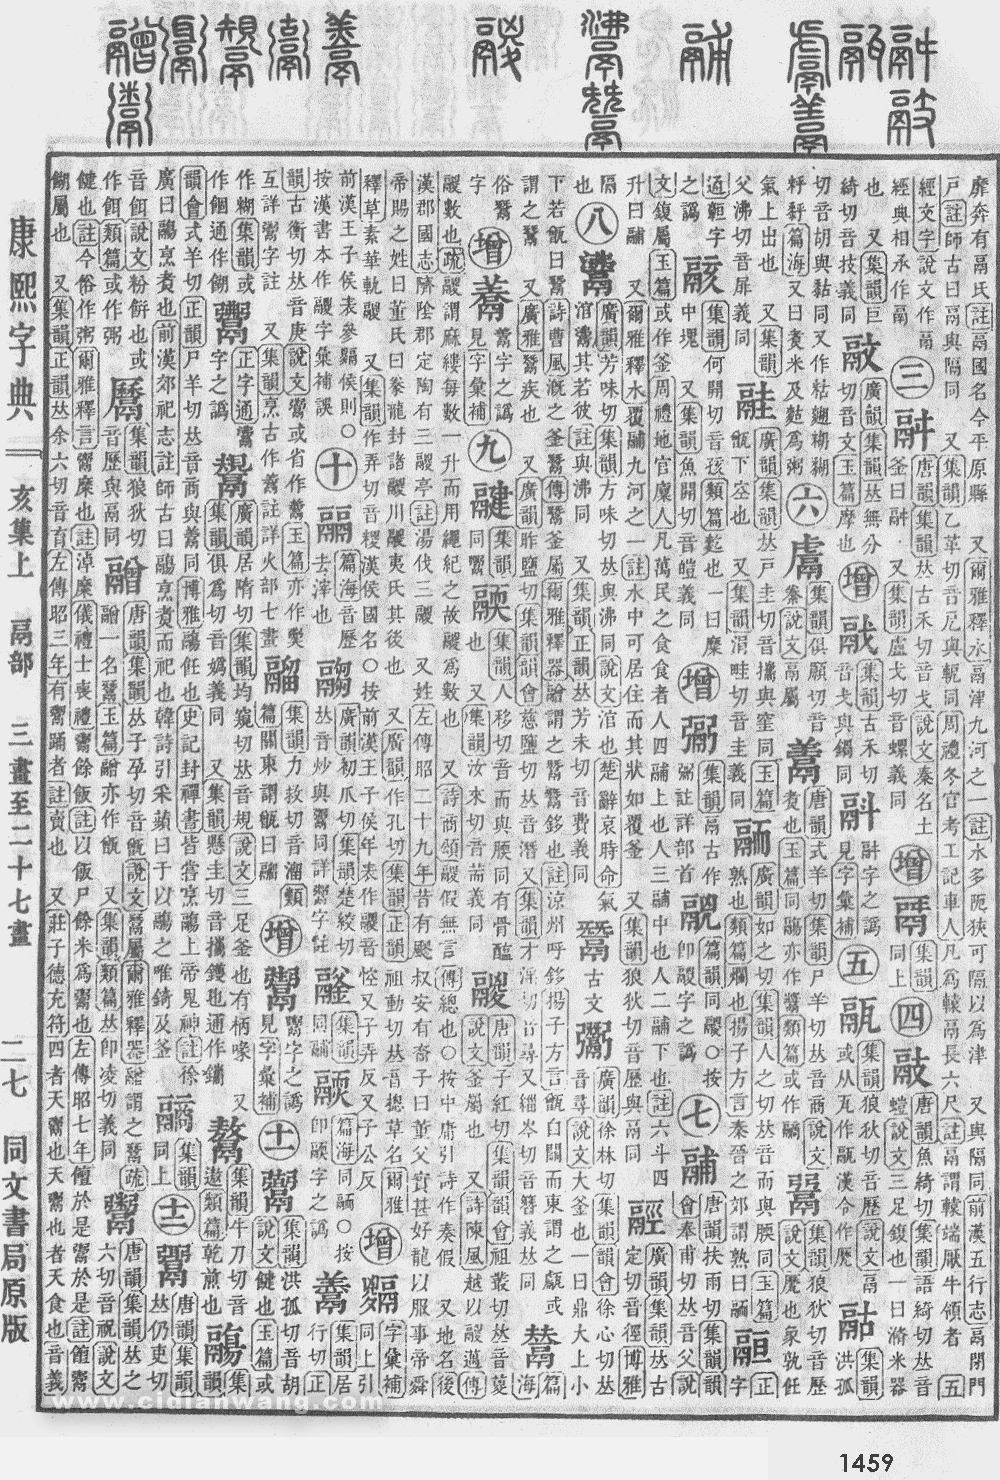 康熙字典掃描版第1459頁